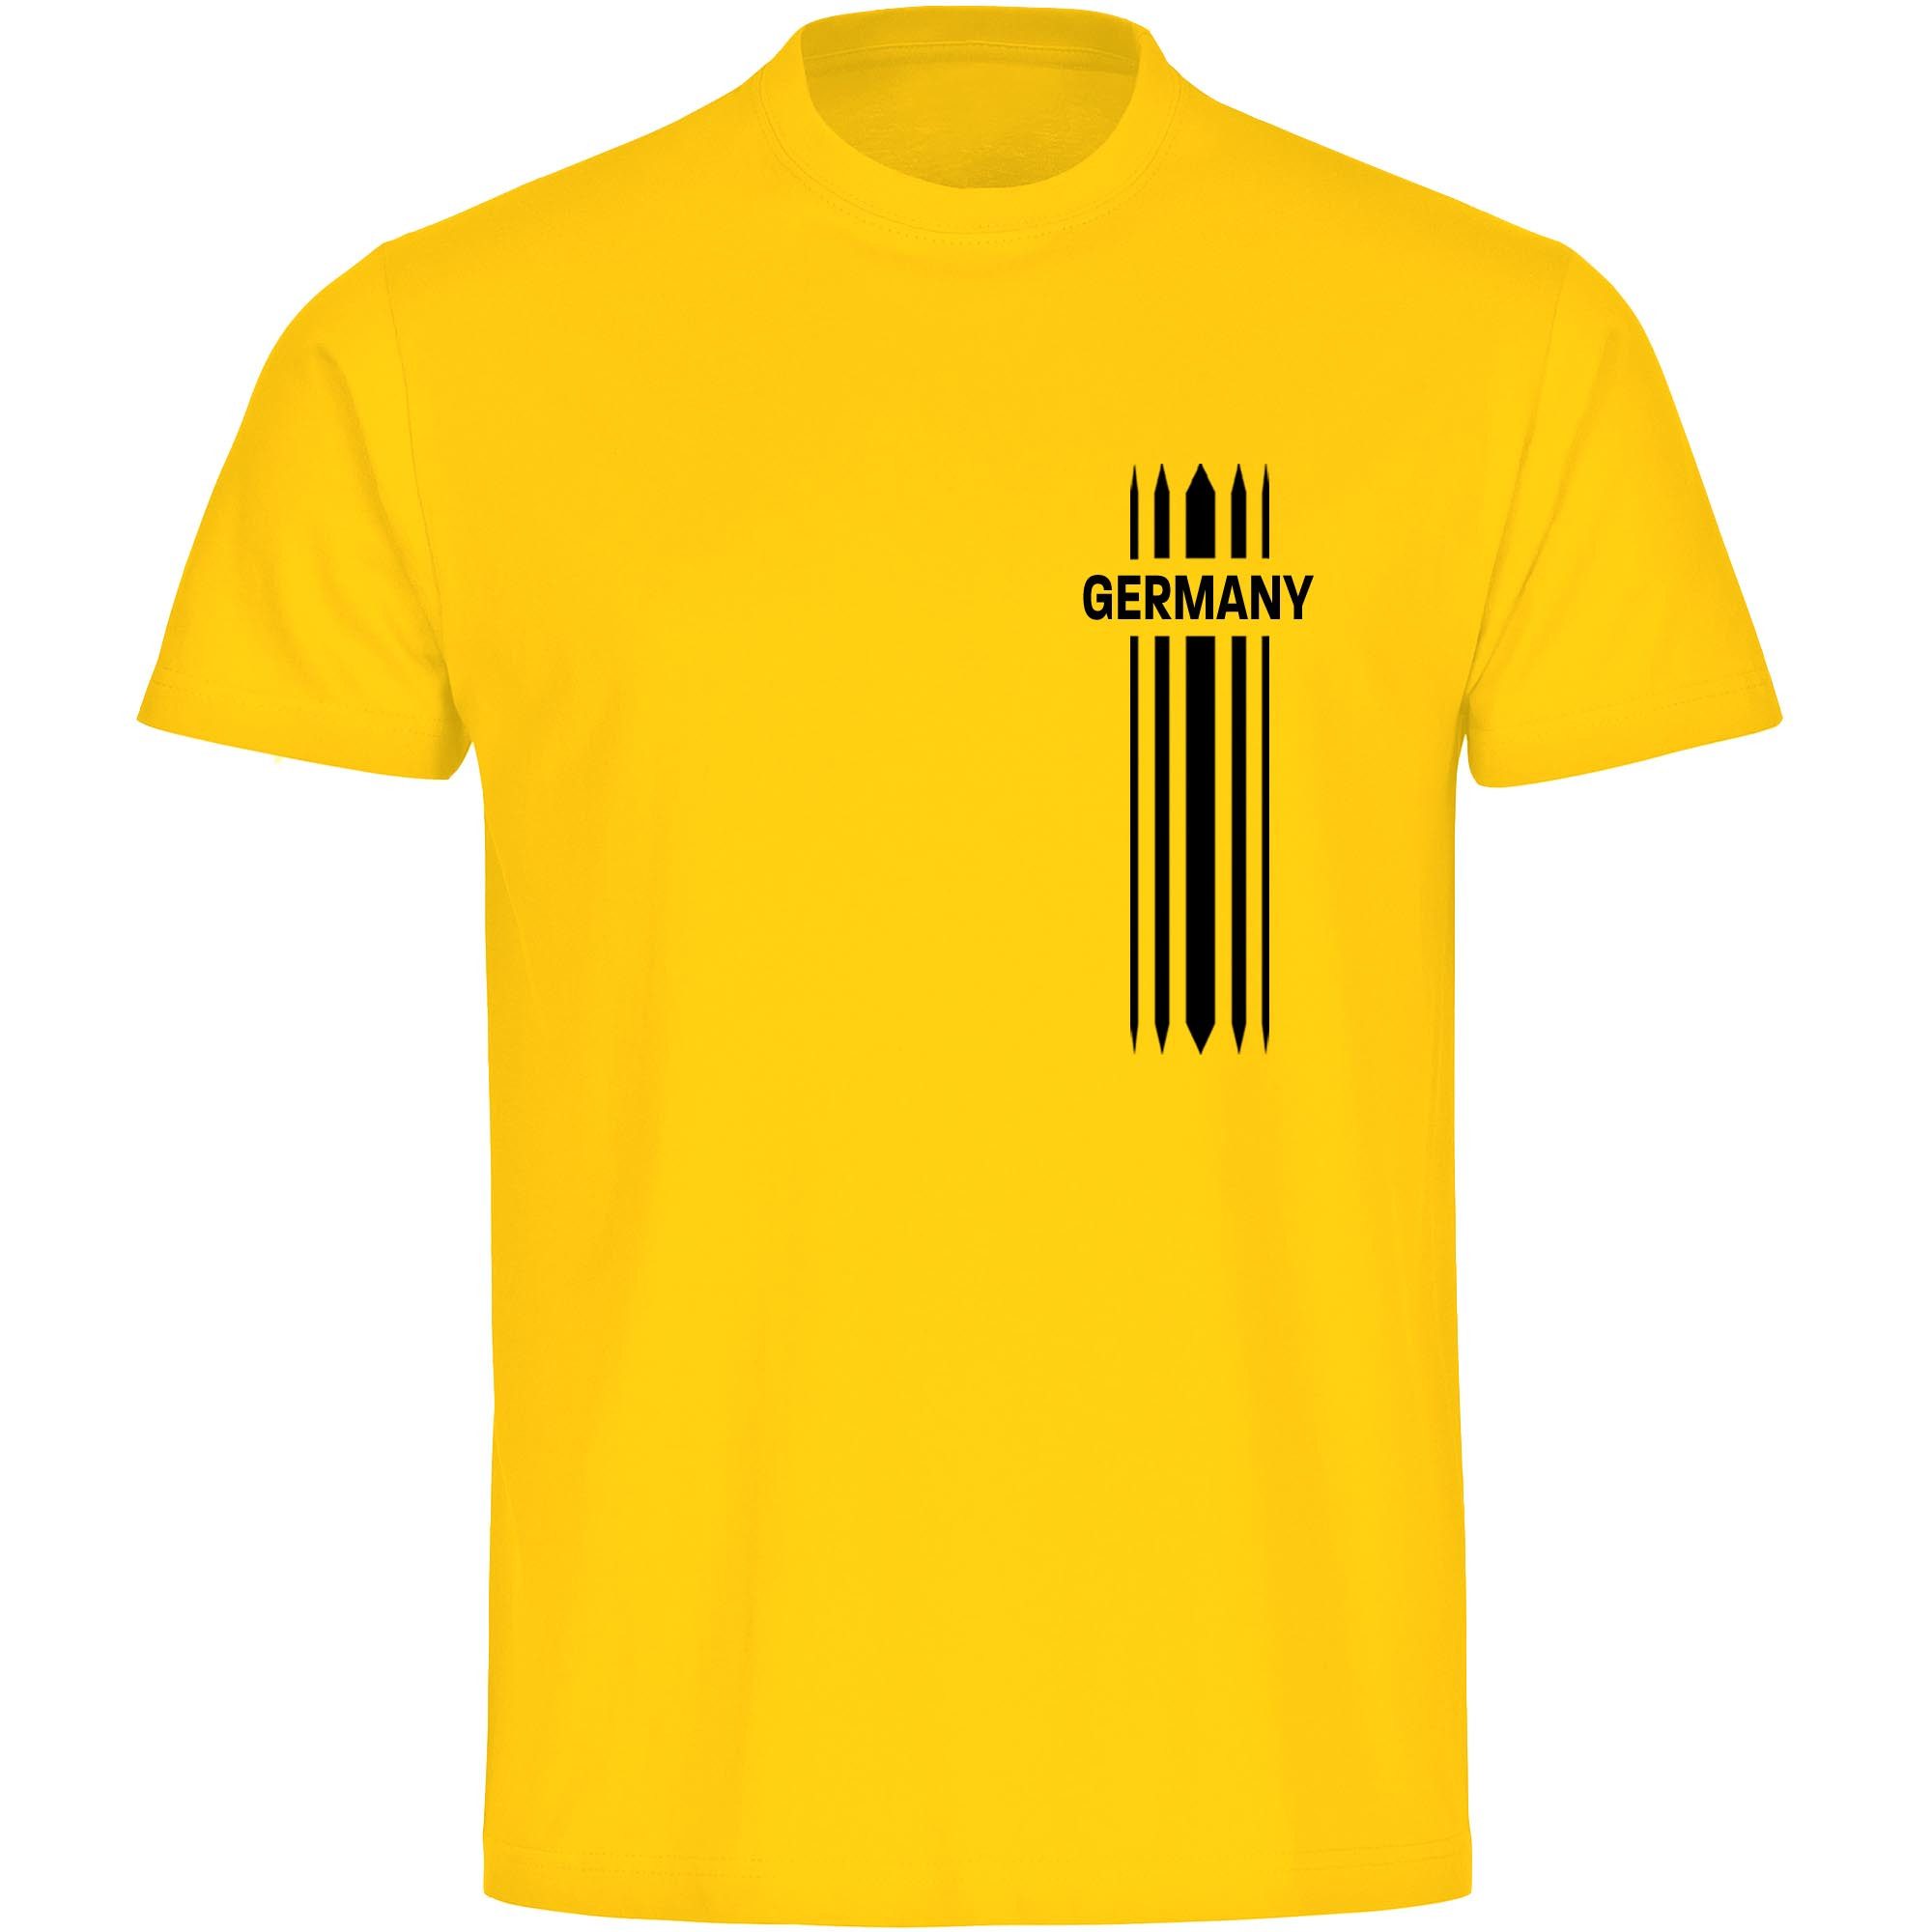 multifanshop T-Shirt Herren Germany - Streifen - Männer